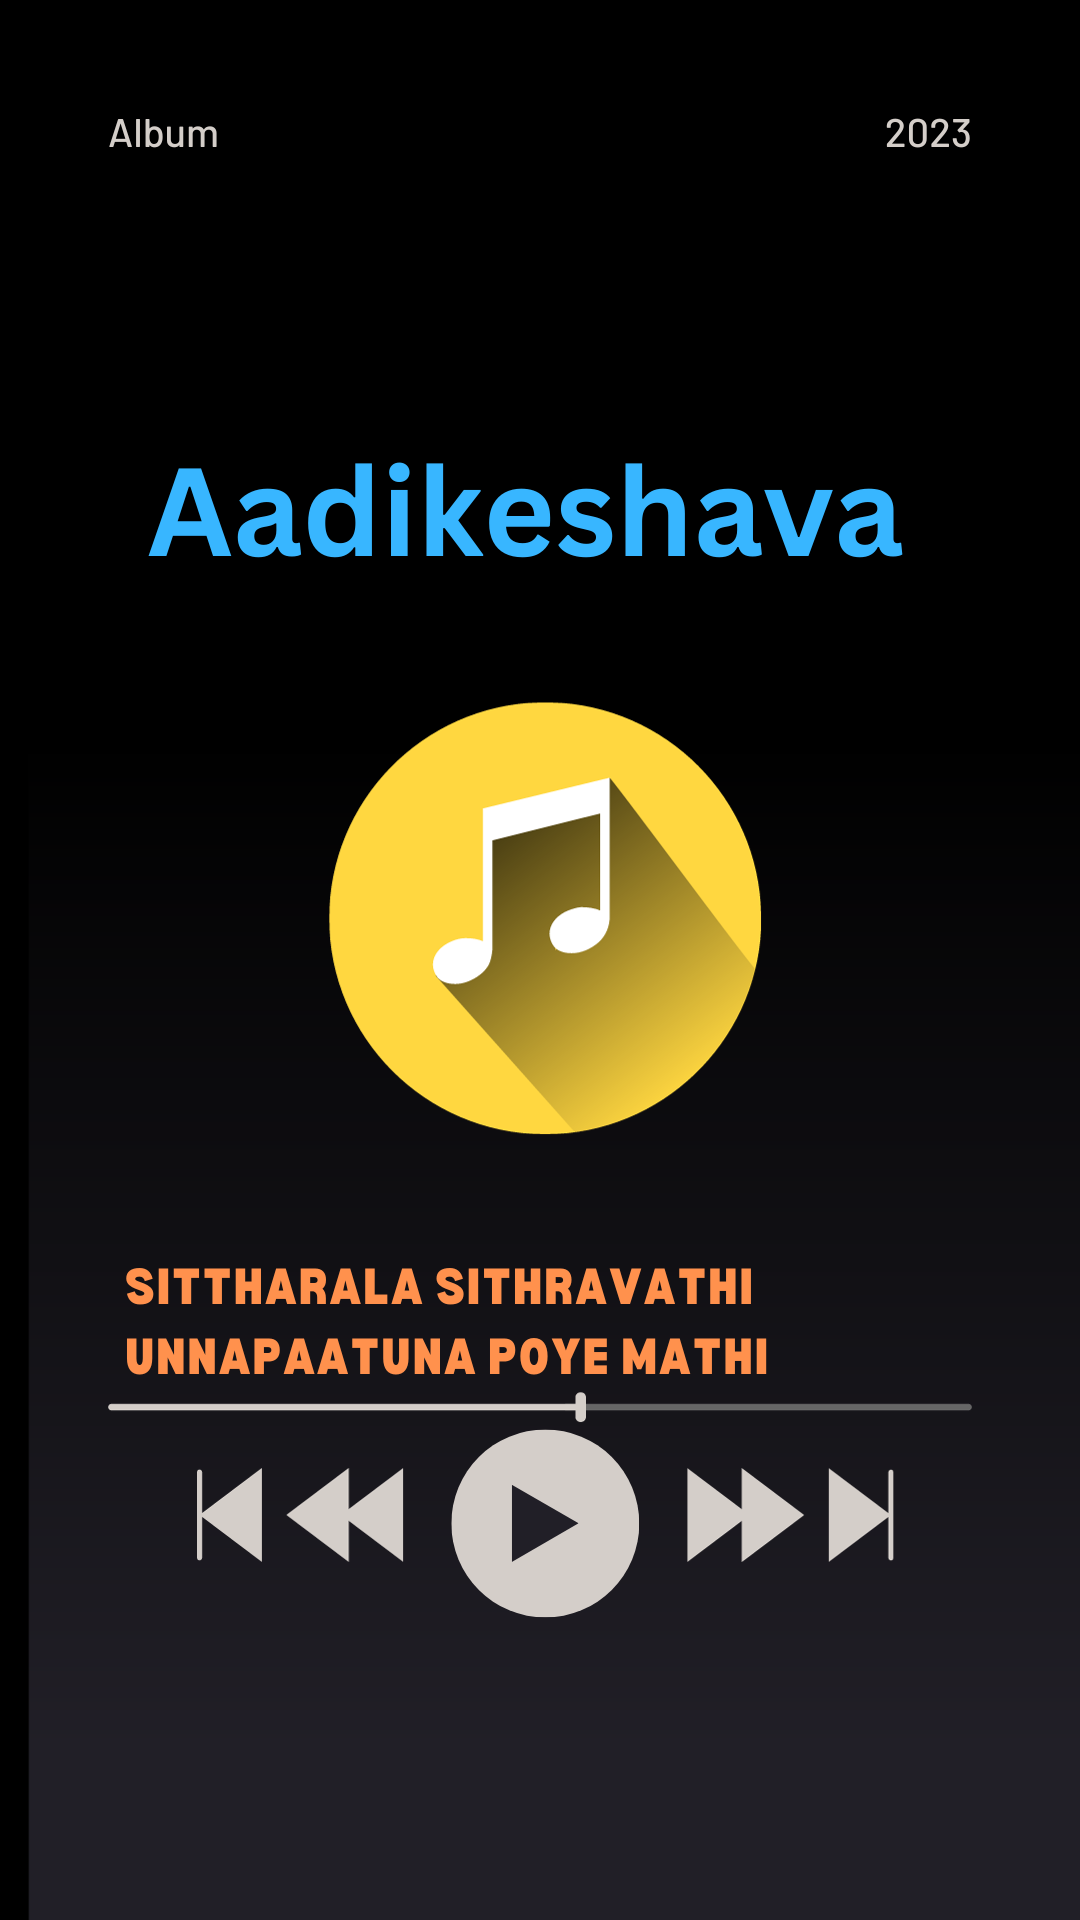 Sittharala Sithravathi Lyrics in Aadikeshava